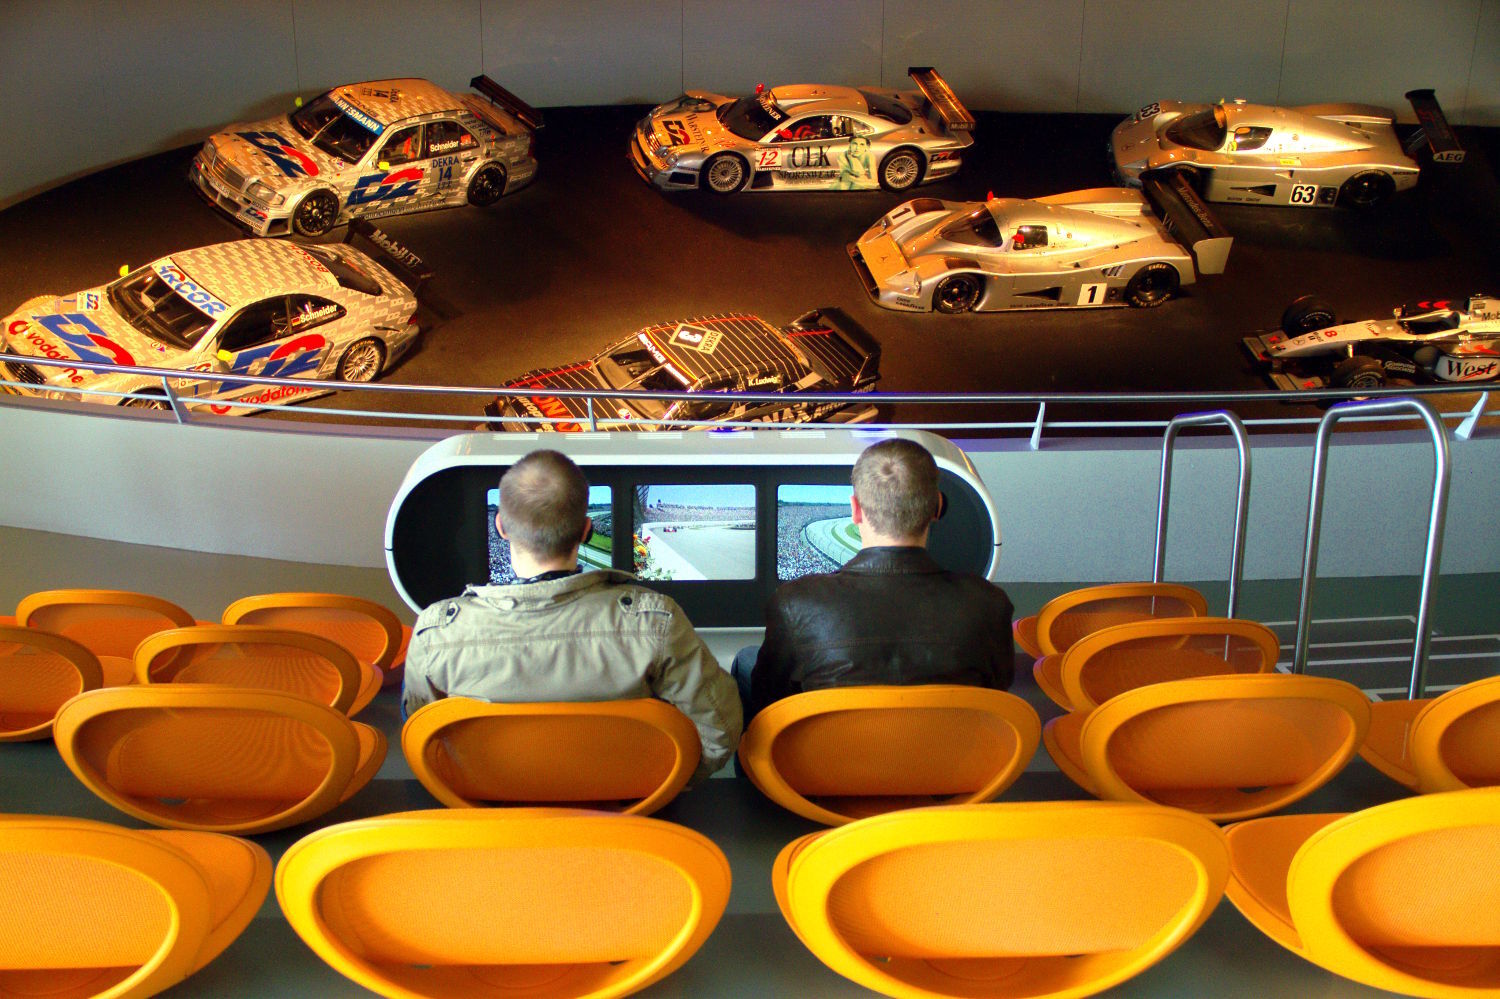 Vista da sala ‘Flechas de Prata’, espaço dedicado às corridas de carro em que o visitante se senta em uma arquibancada com seis monitores com registros de competições históricas